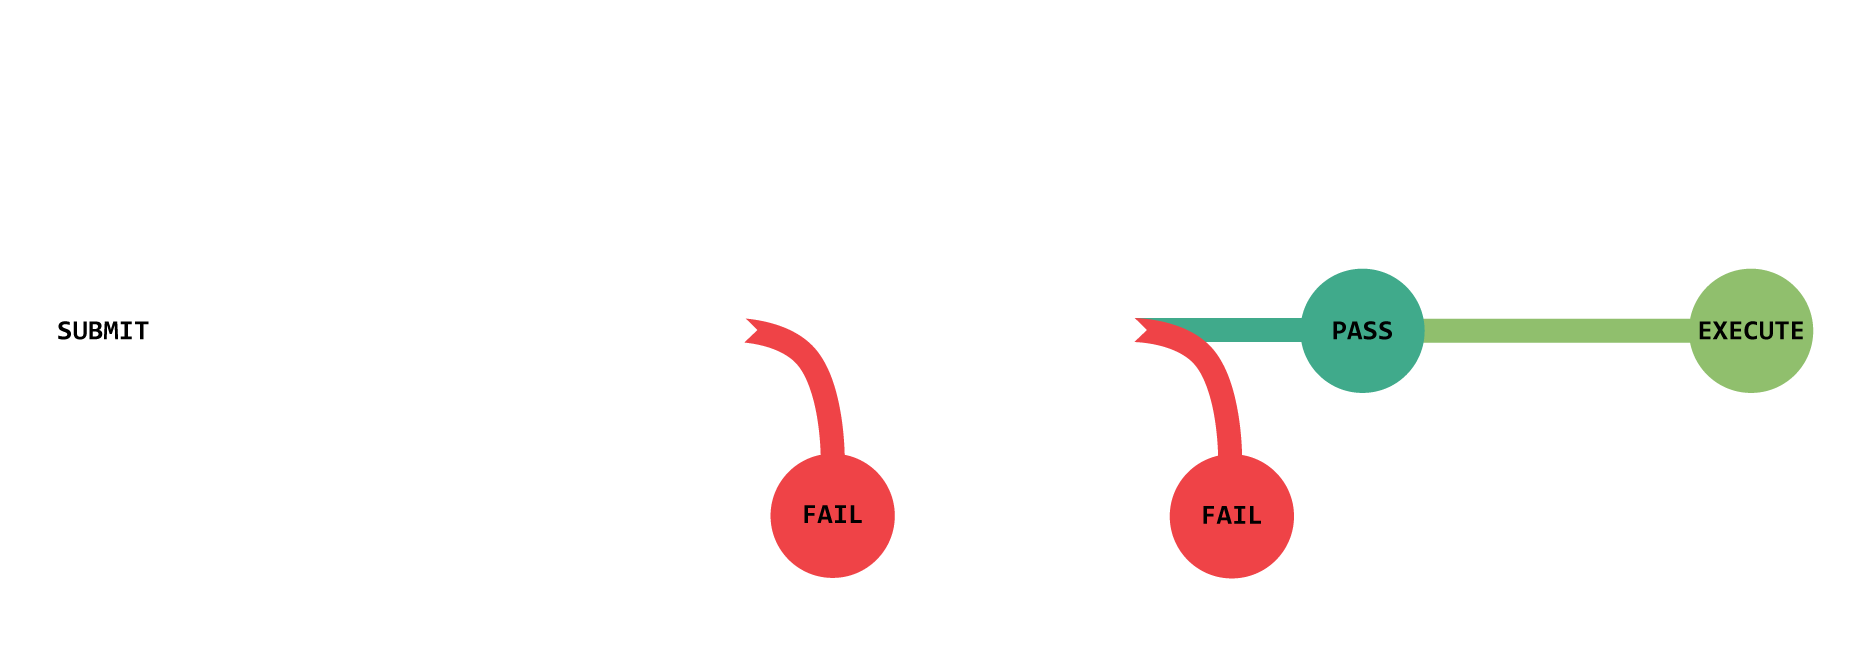 New proposal process